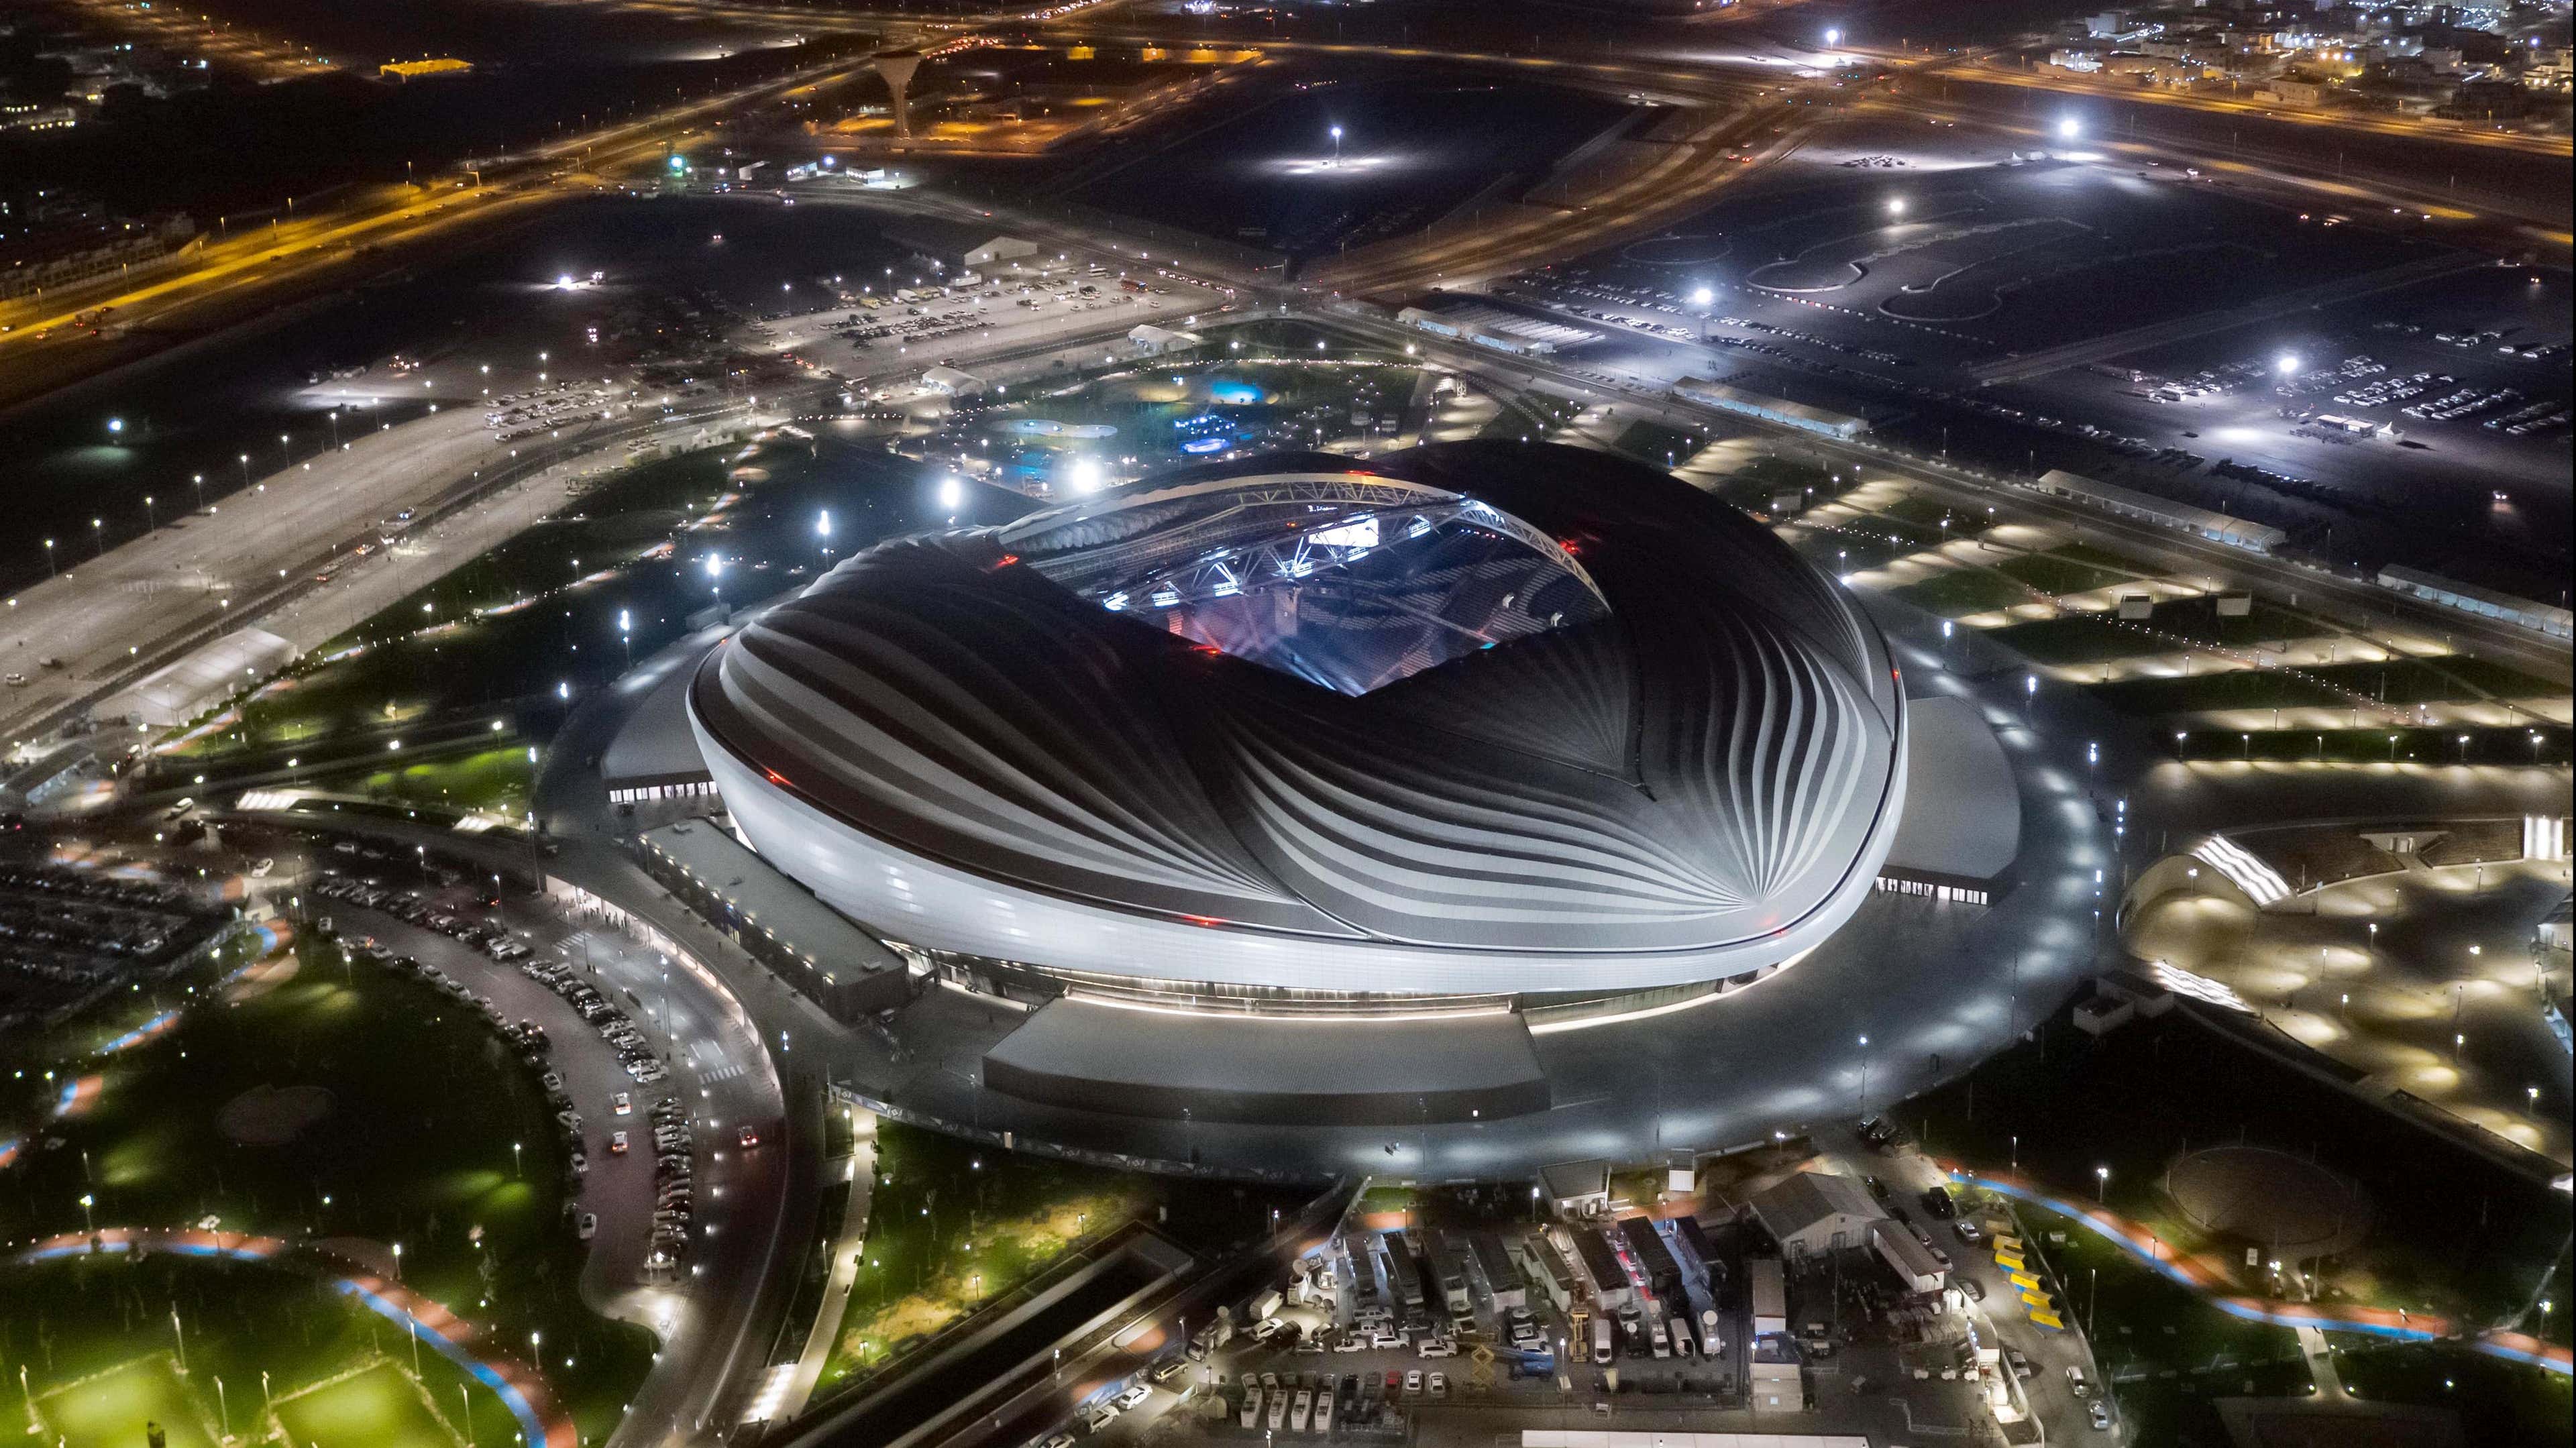 Zaha Haddid Al Janoub Stadium Qatar World Cup 2022